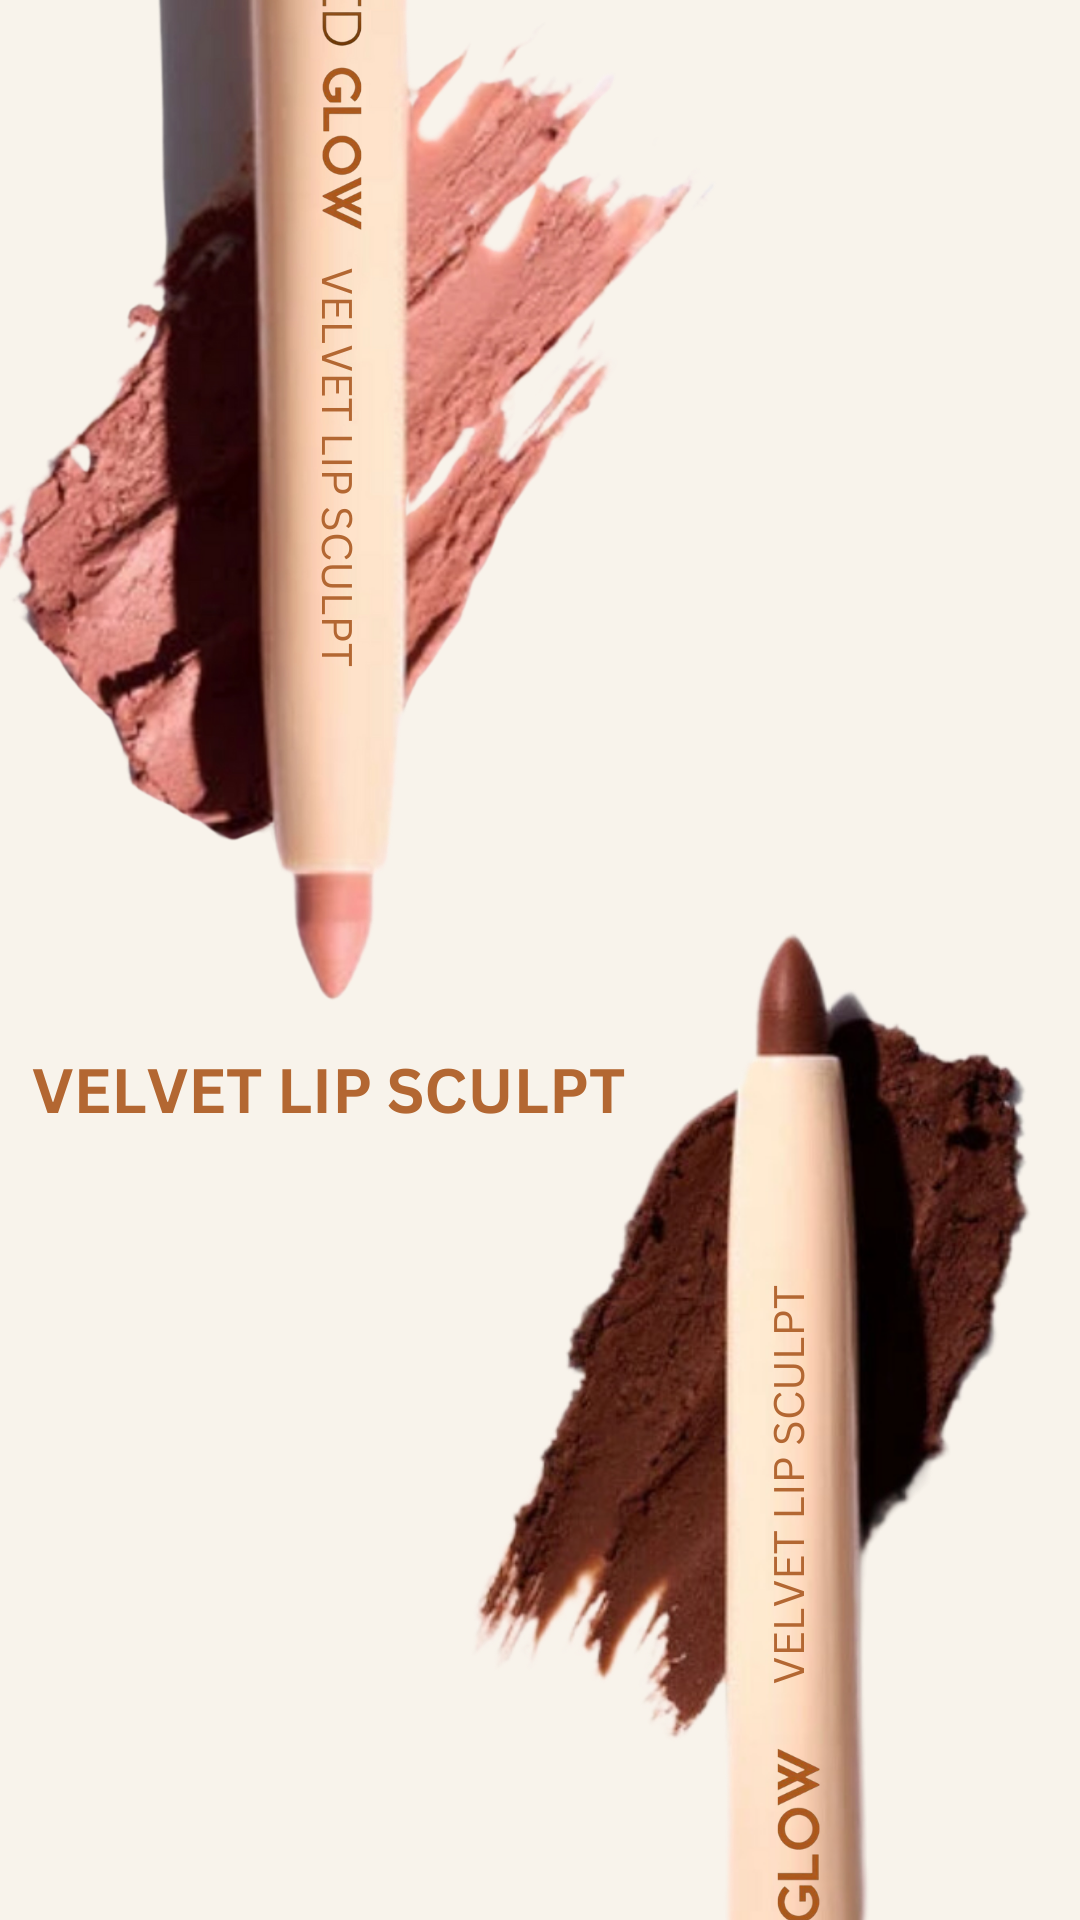 Velvet Lip Sculpt Liner Whispering Rose